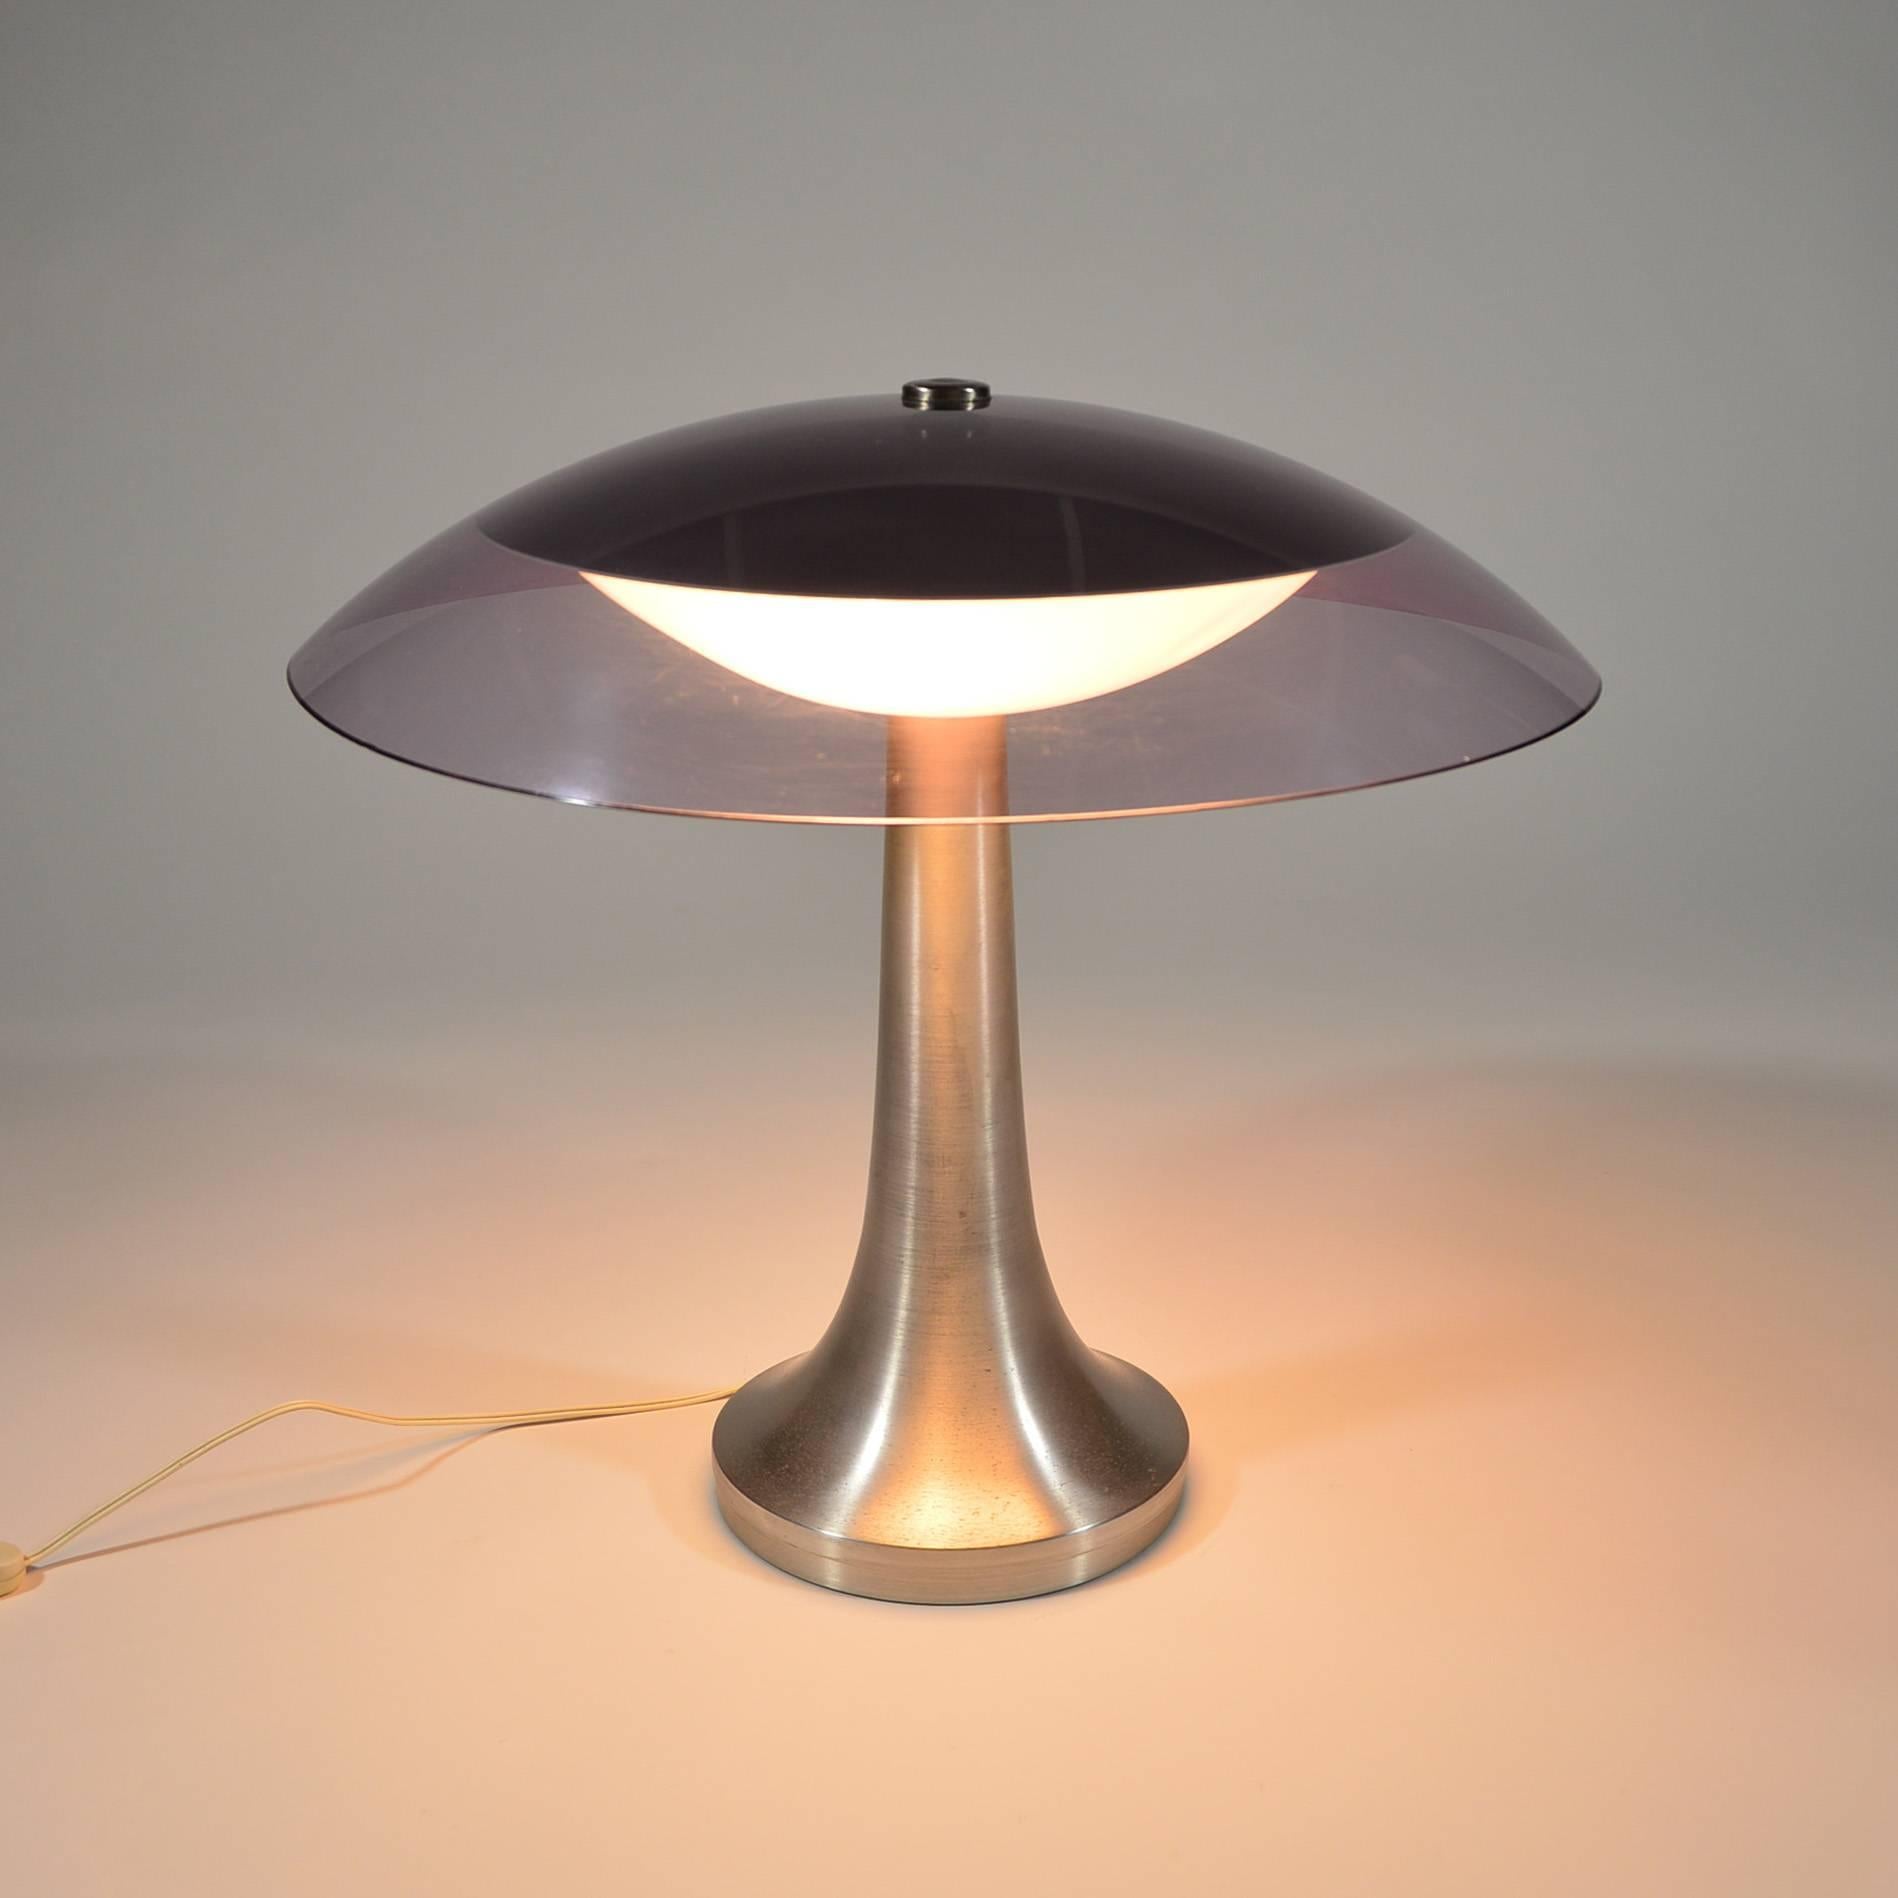 Plexiglass Stilux Milano Italian Table Lamp in Lucite and Aluminium, circa 1960 For Sale